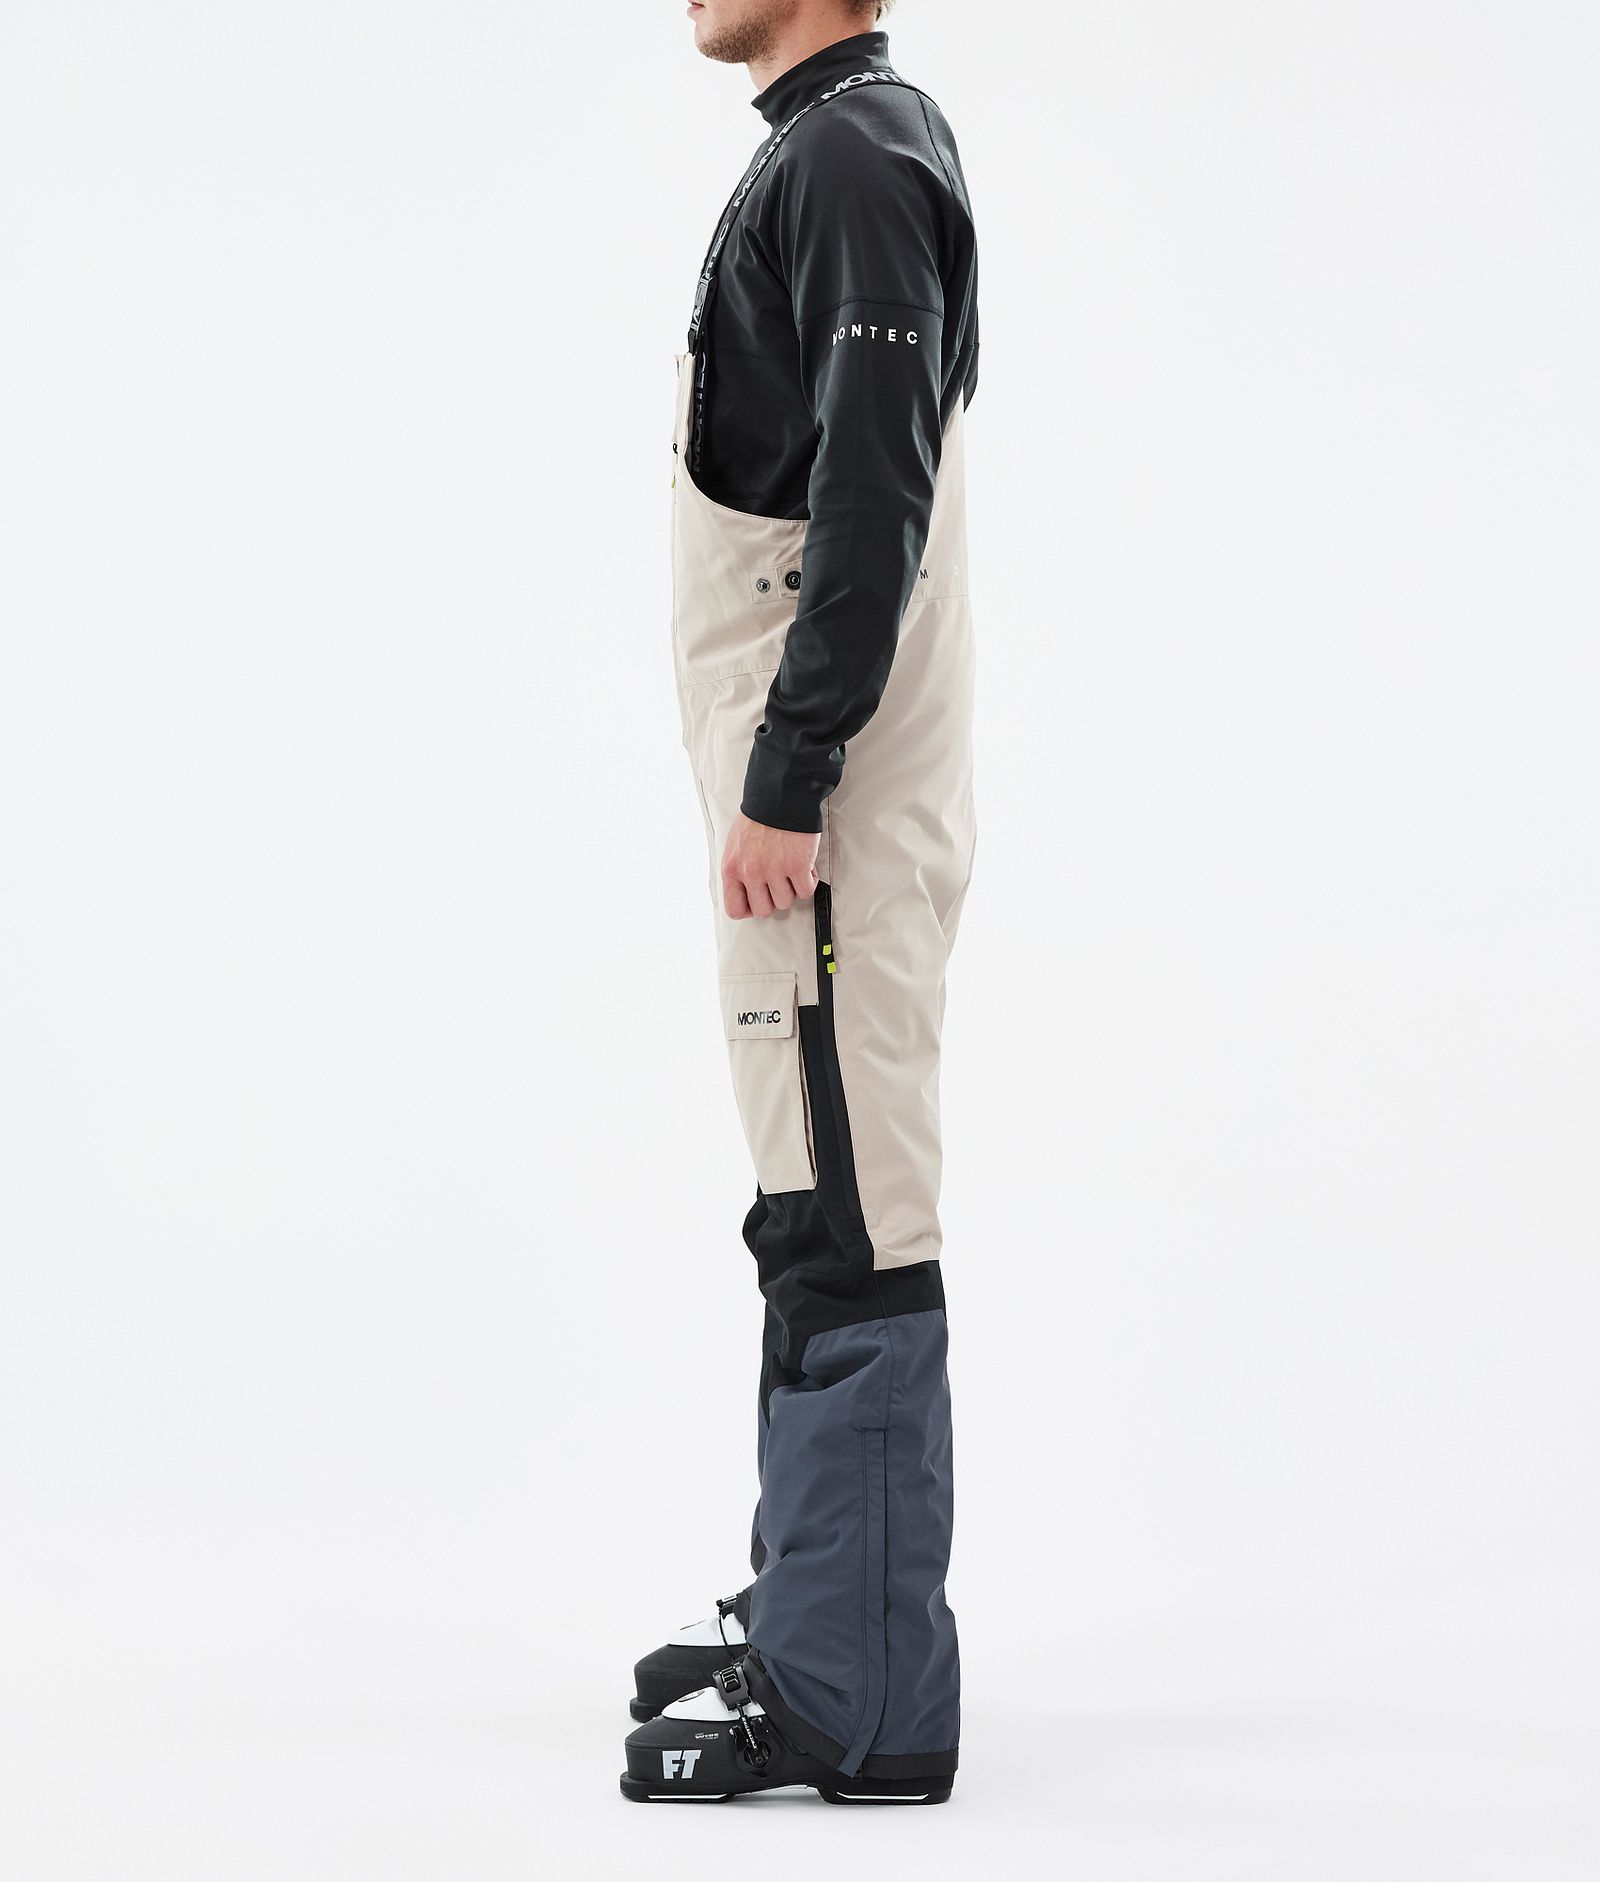 Montec Fawk Pantalones Snowboard Hombre Metal Blue/Black